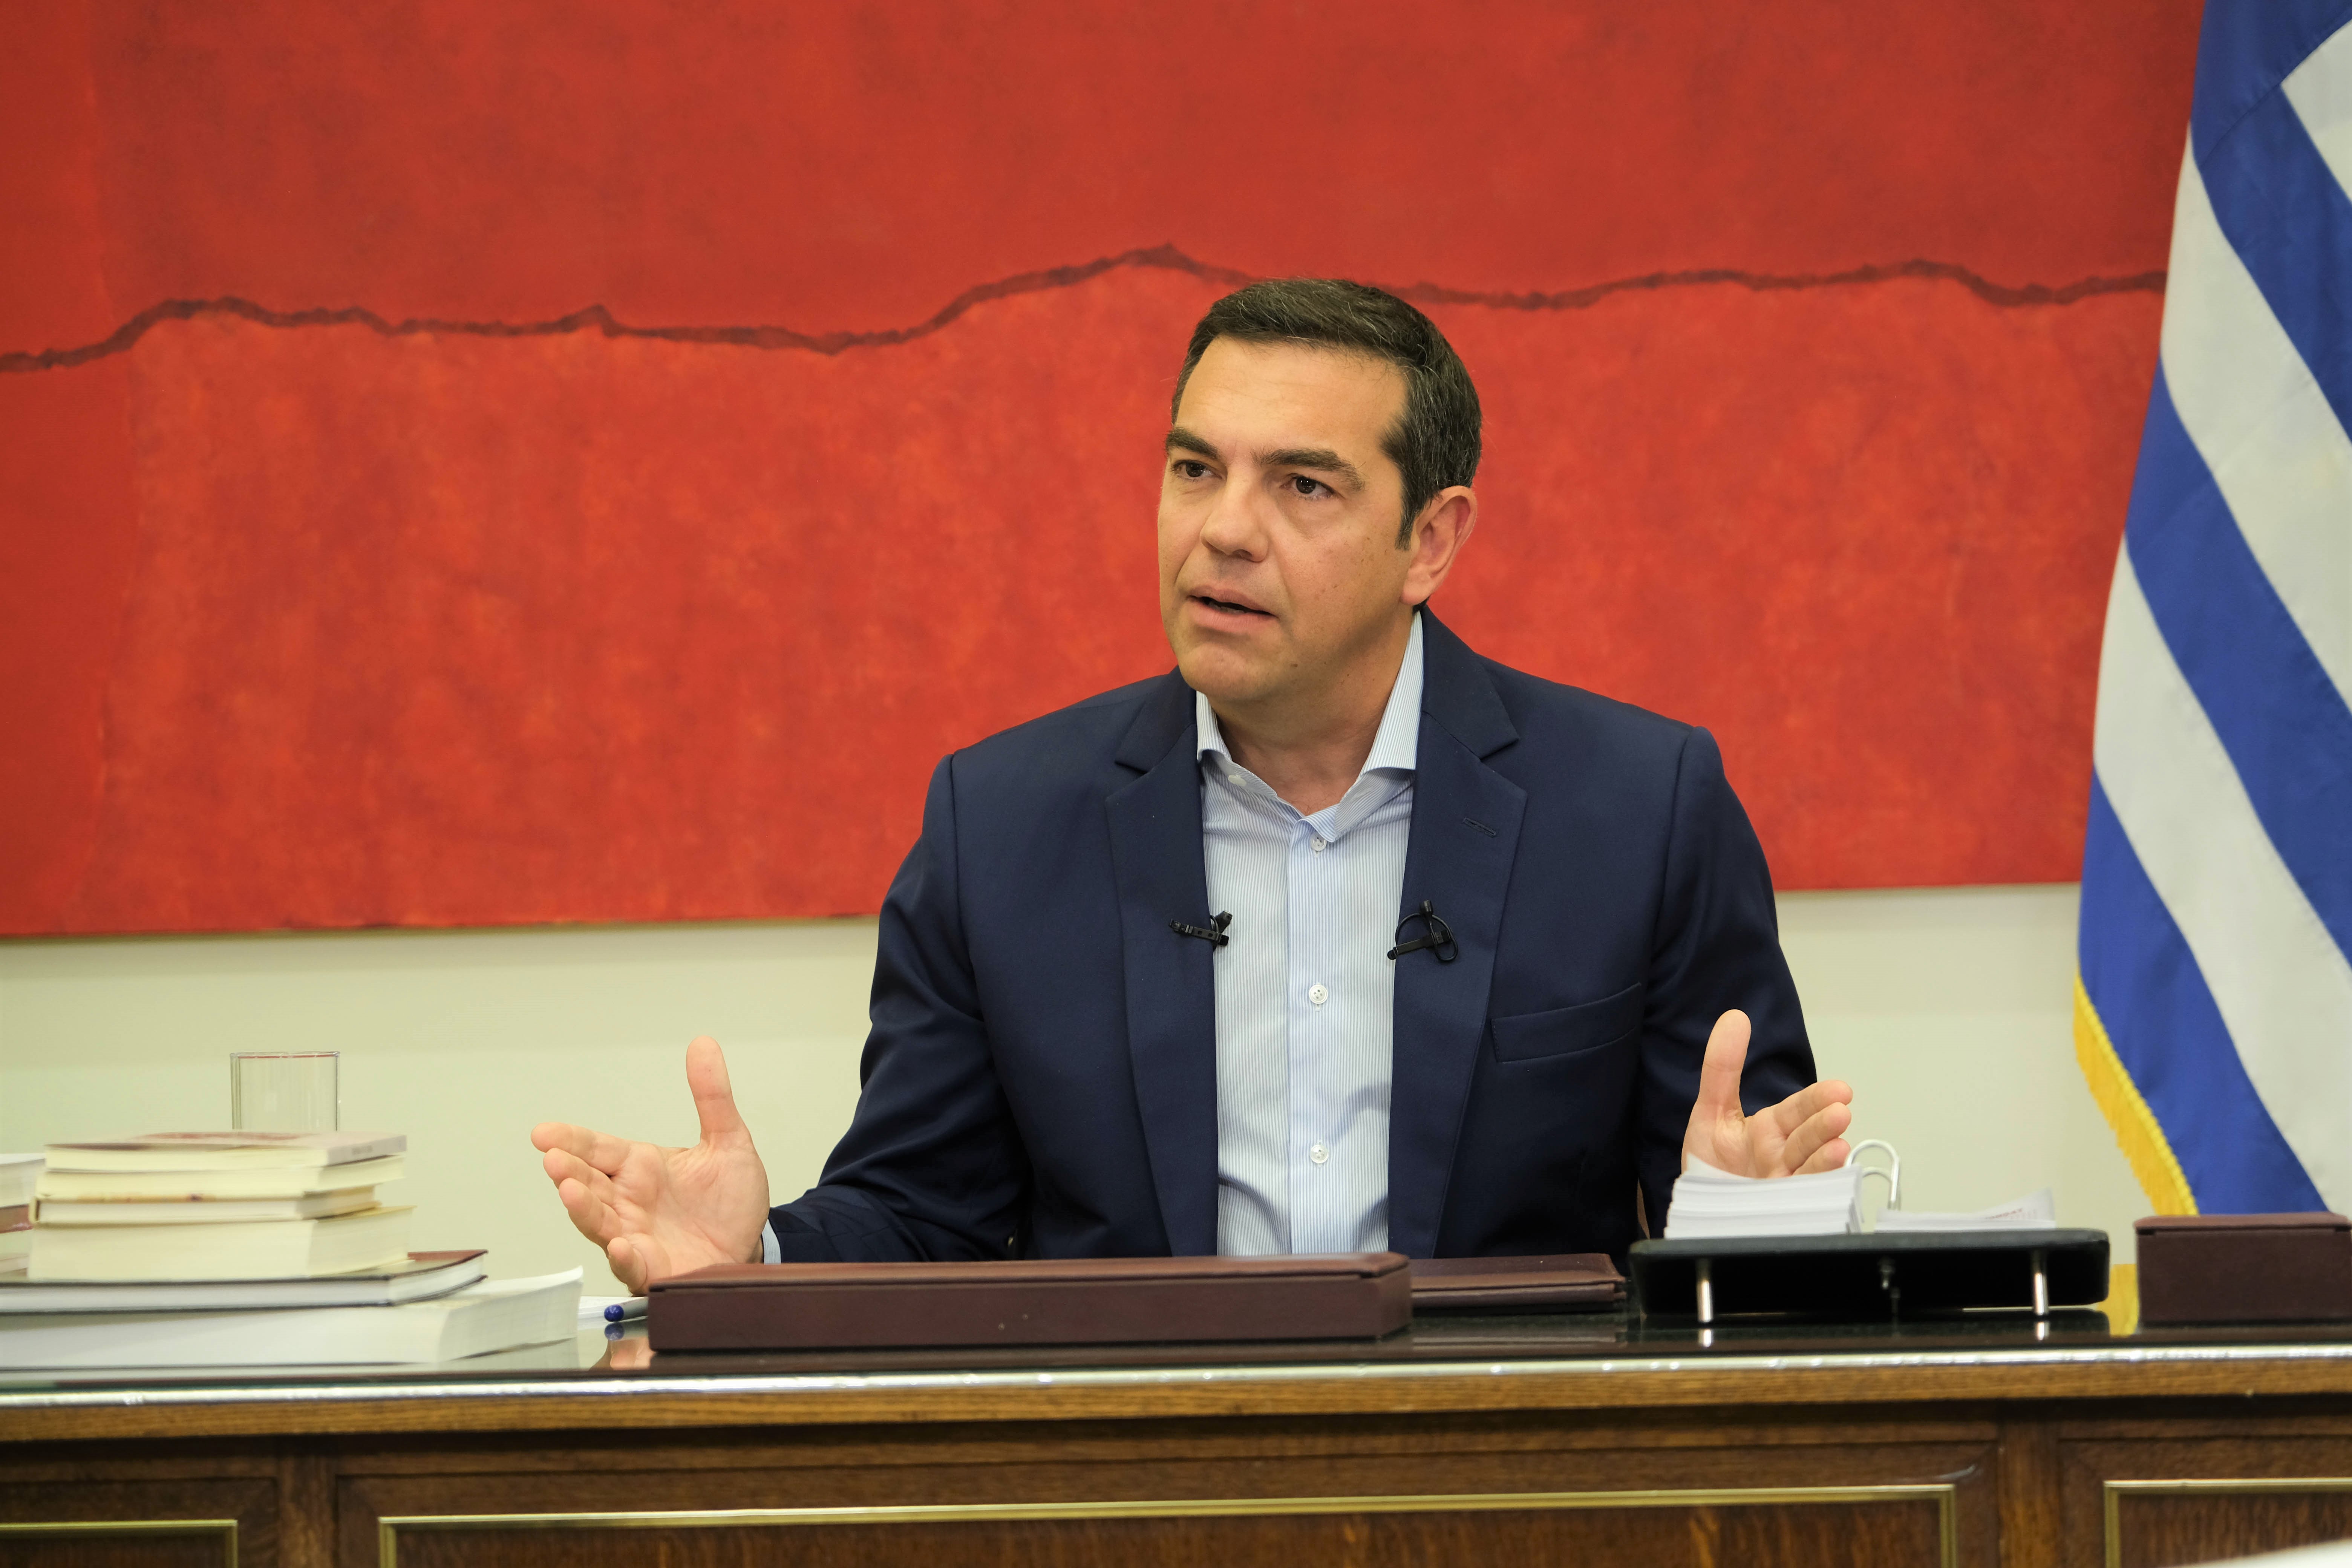 Συνέντευξη του προέδρου του ΣΥΡΙΖΑ Προοδευτική Συμμαχία, Αλέξη Τσίπρα, στη διακαναλική εκπομπή +NEWS